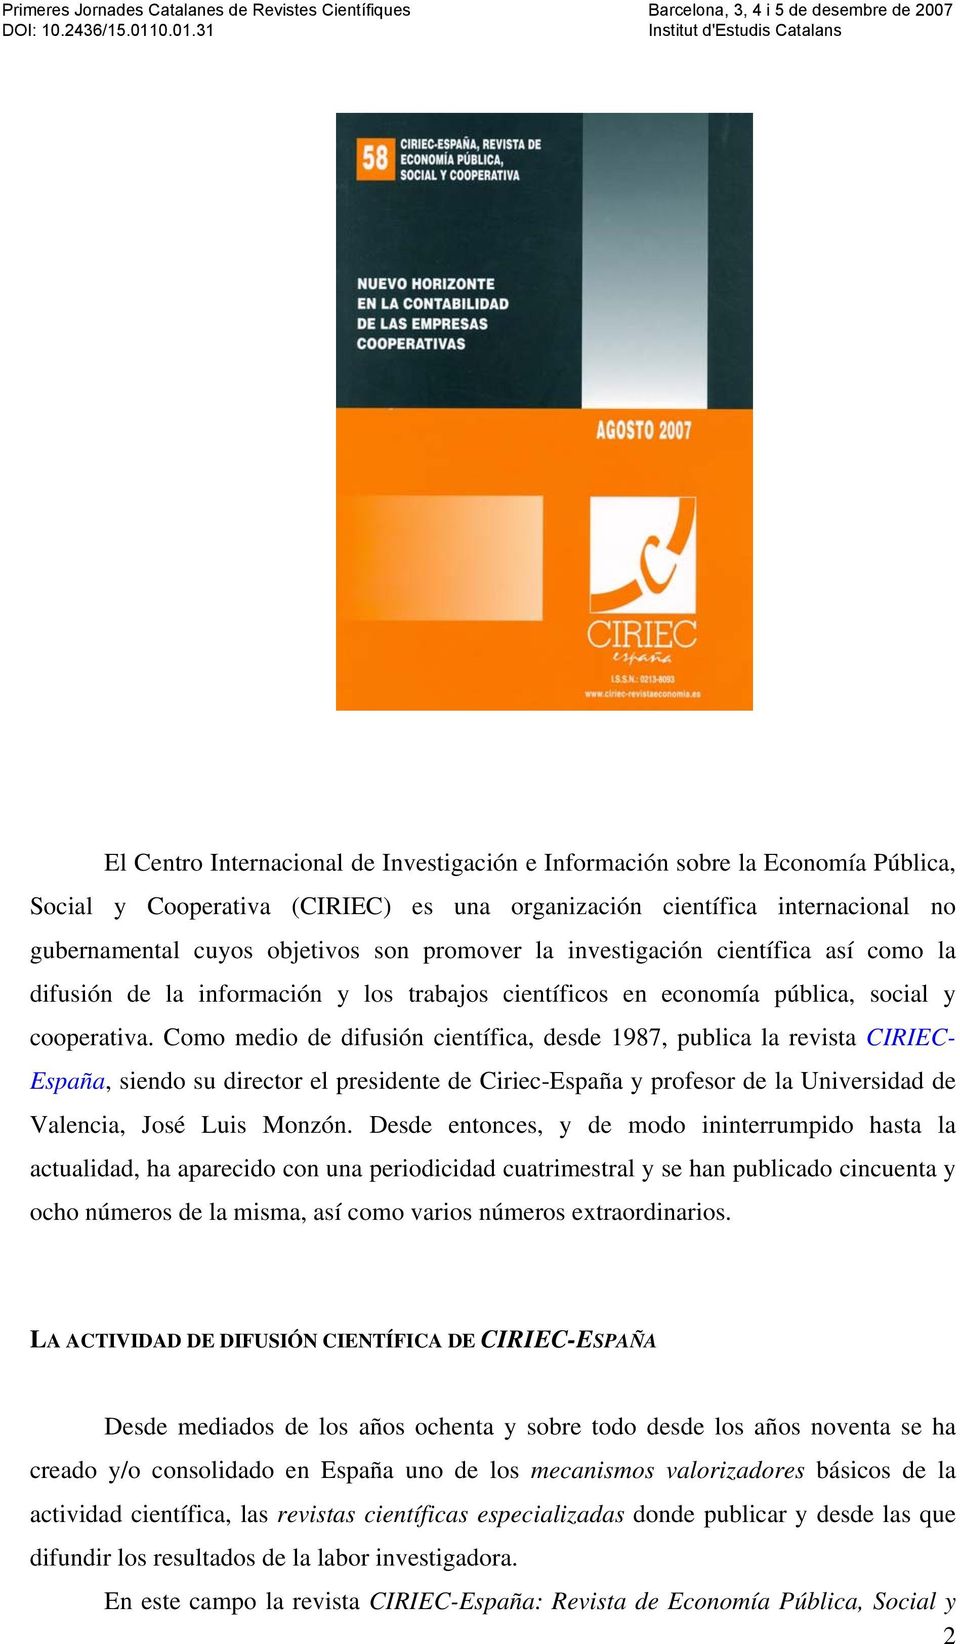 Como medio de difusión científica, desde 1987, publica la revista CIRIEC- España, siendo su director el presidente de Ciriec-España y profesor de la Universidad de Valencia, José Luis Monzón.